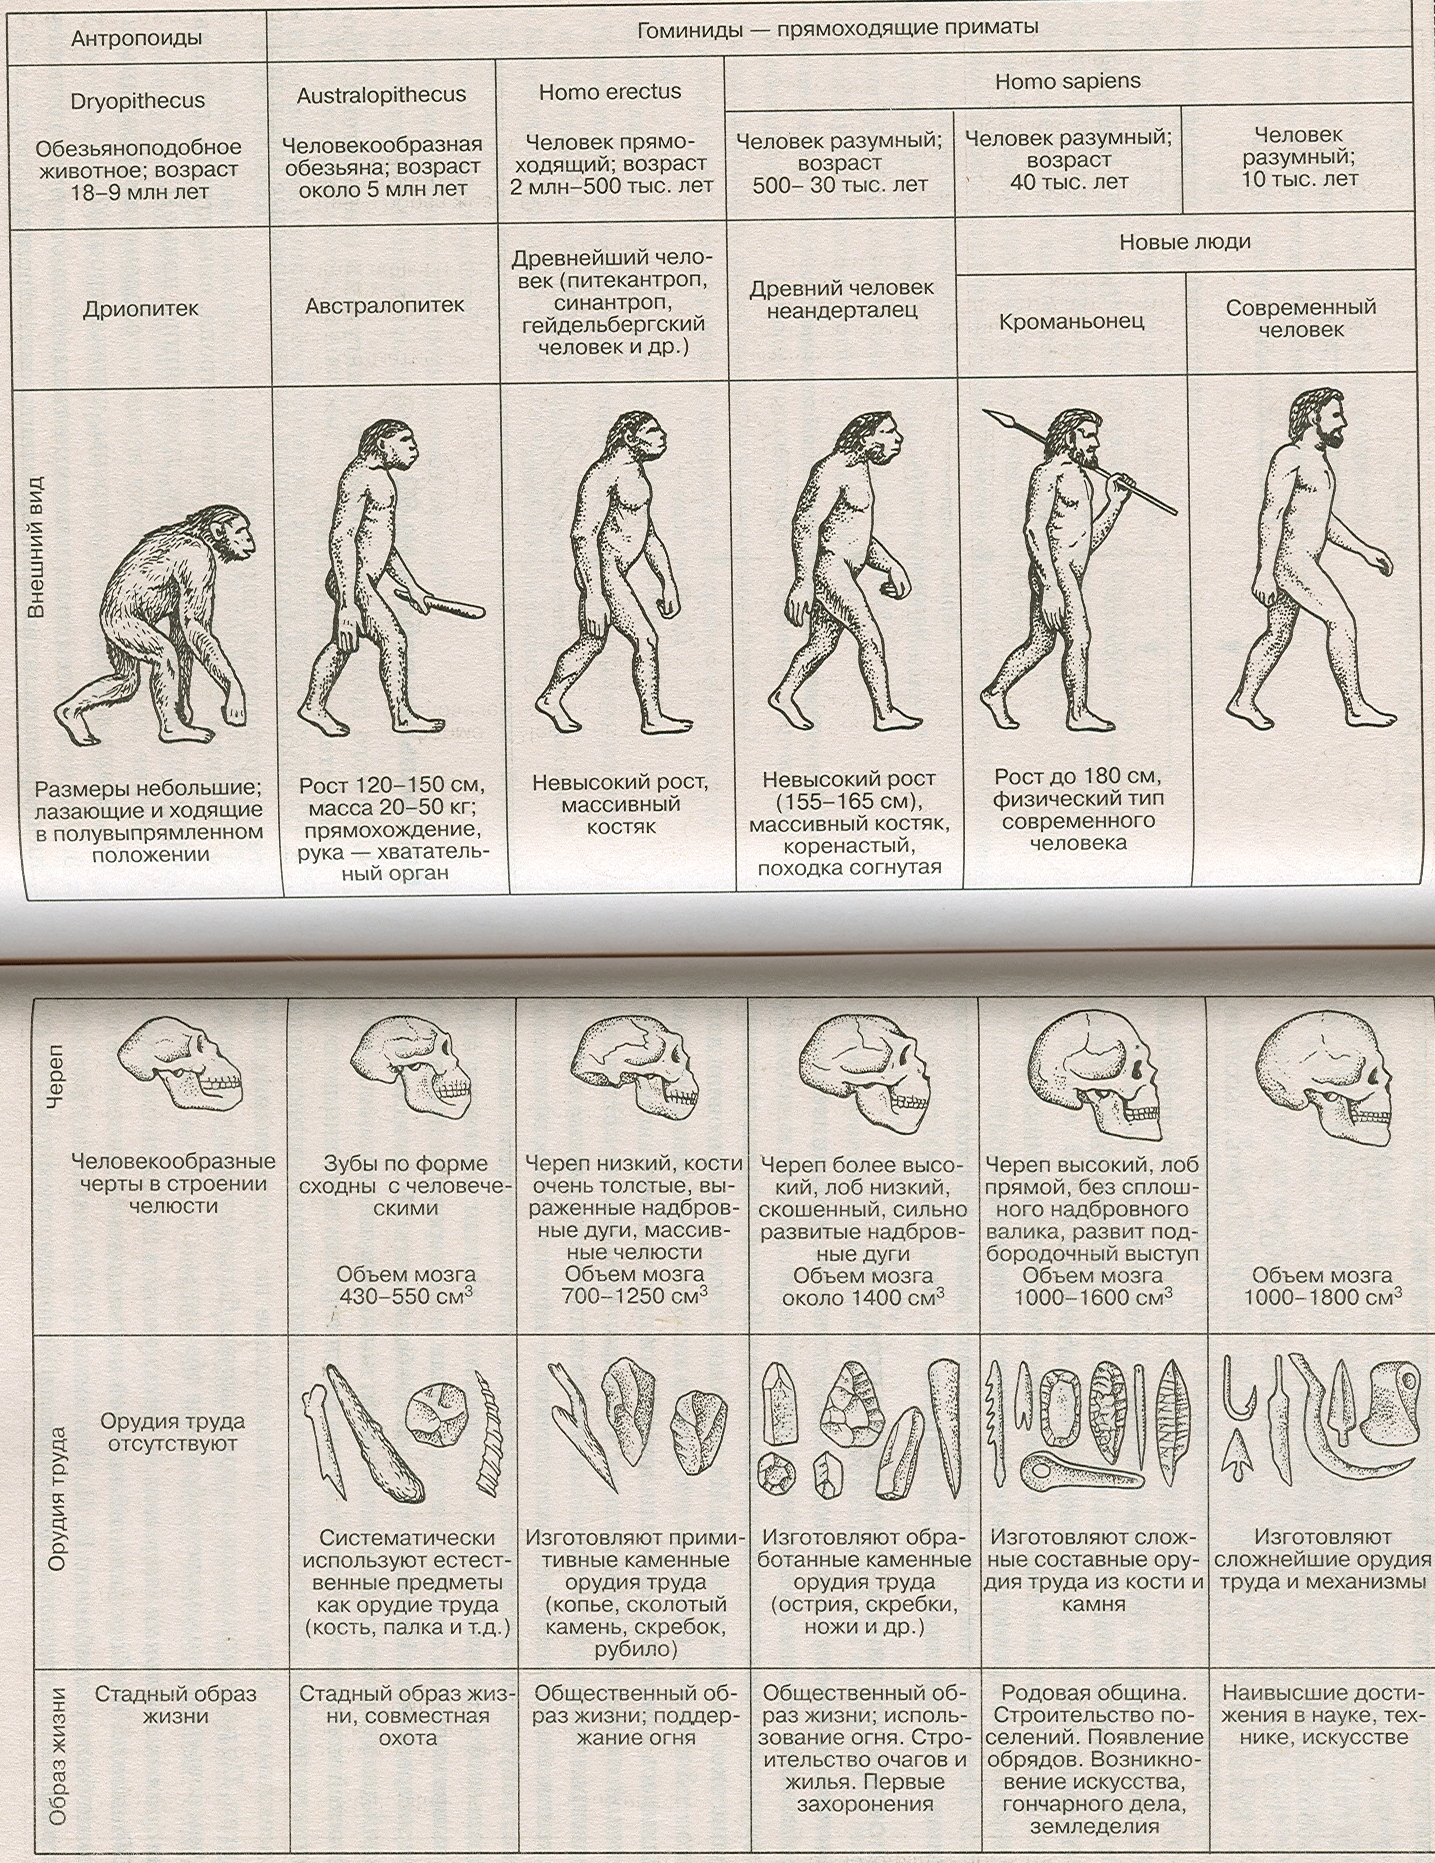 Древние люди егэ. Этапы развития человека таблица этапы антропогенеза. Этапы эволюции человека таблица дриопитек. Основные стадии развития человека таблица. Стадия развития человека таблица по биологии.